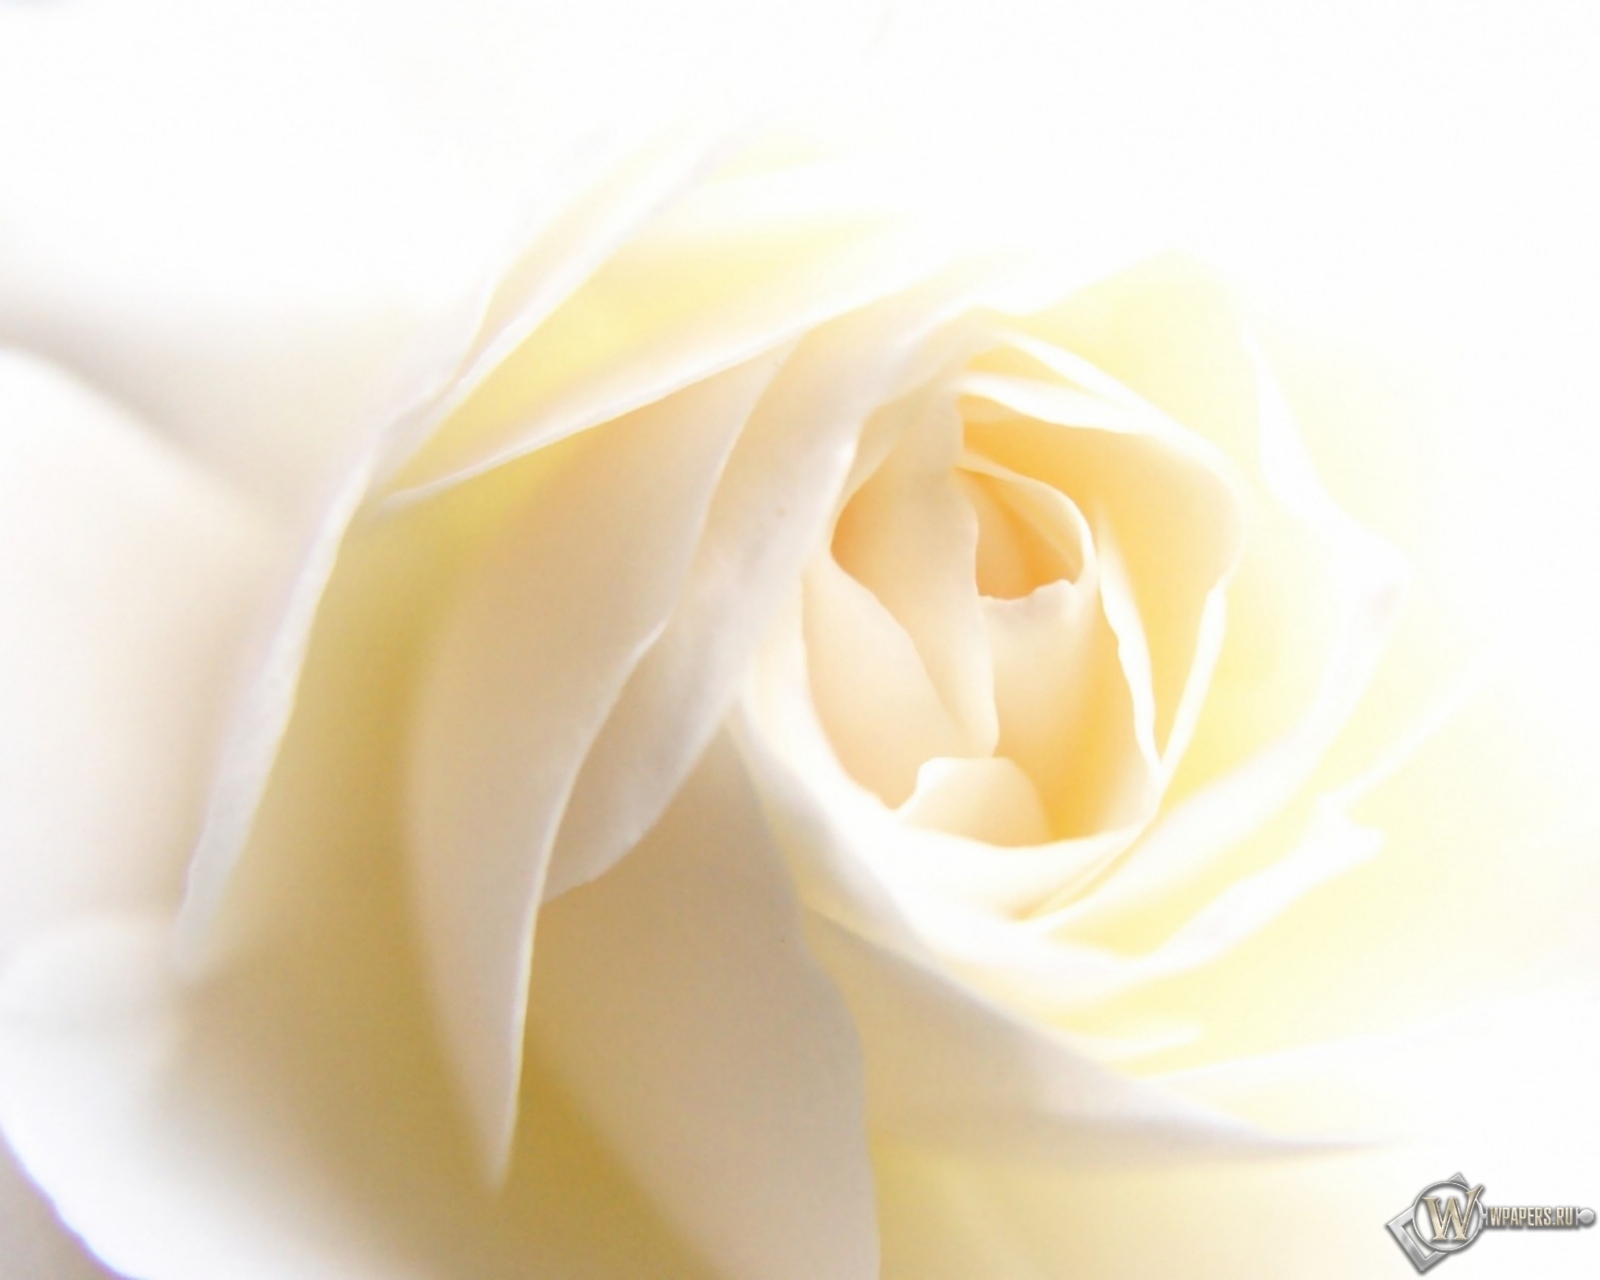 White Rose 1600x1280